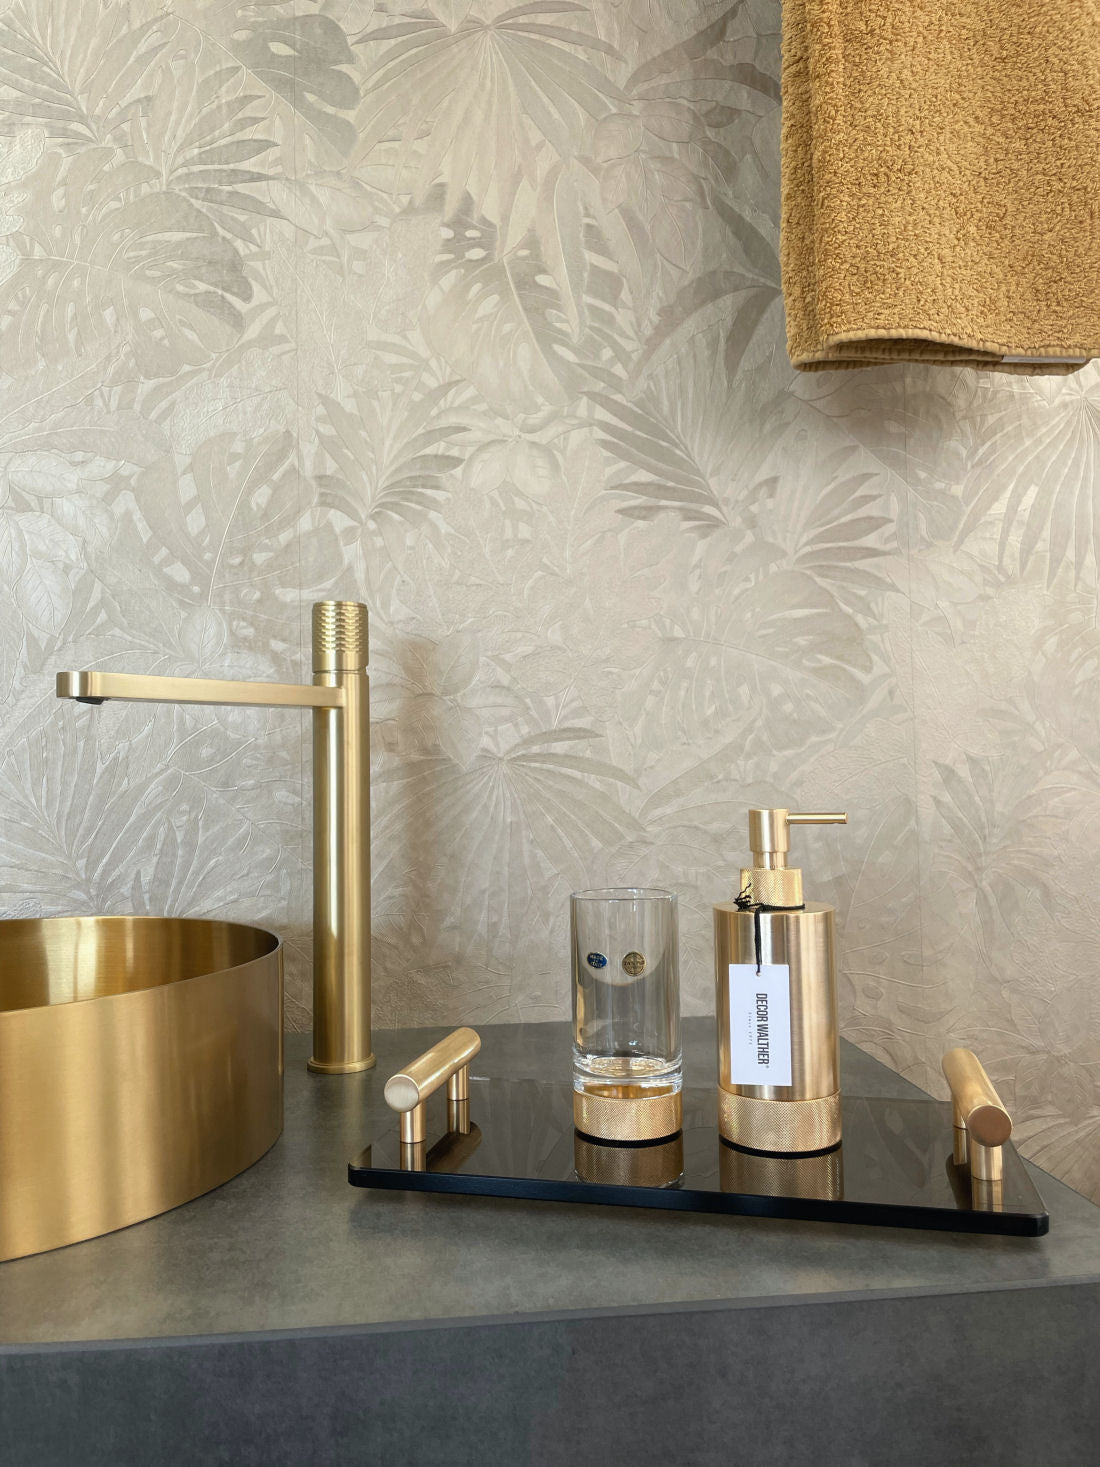 Luxury Bathroom Matt Gold Liquid Soap Dispenser - |VESIMI Design|